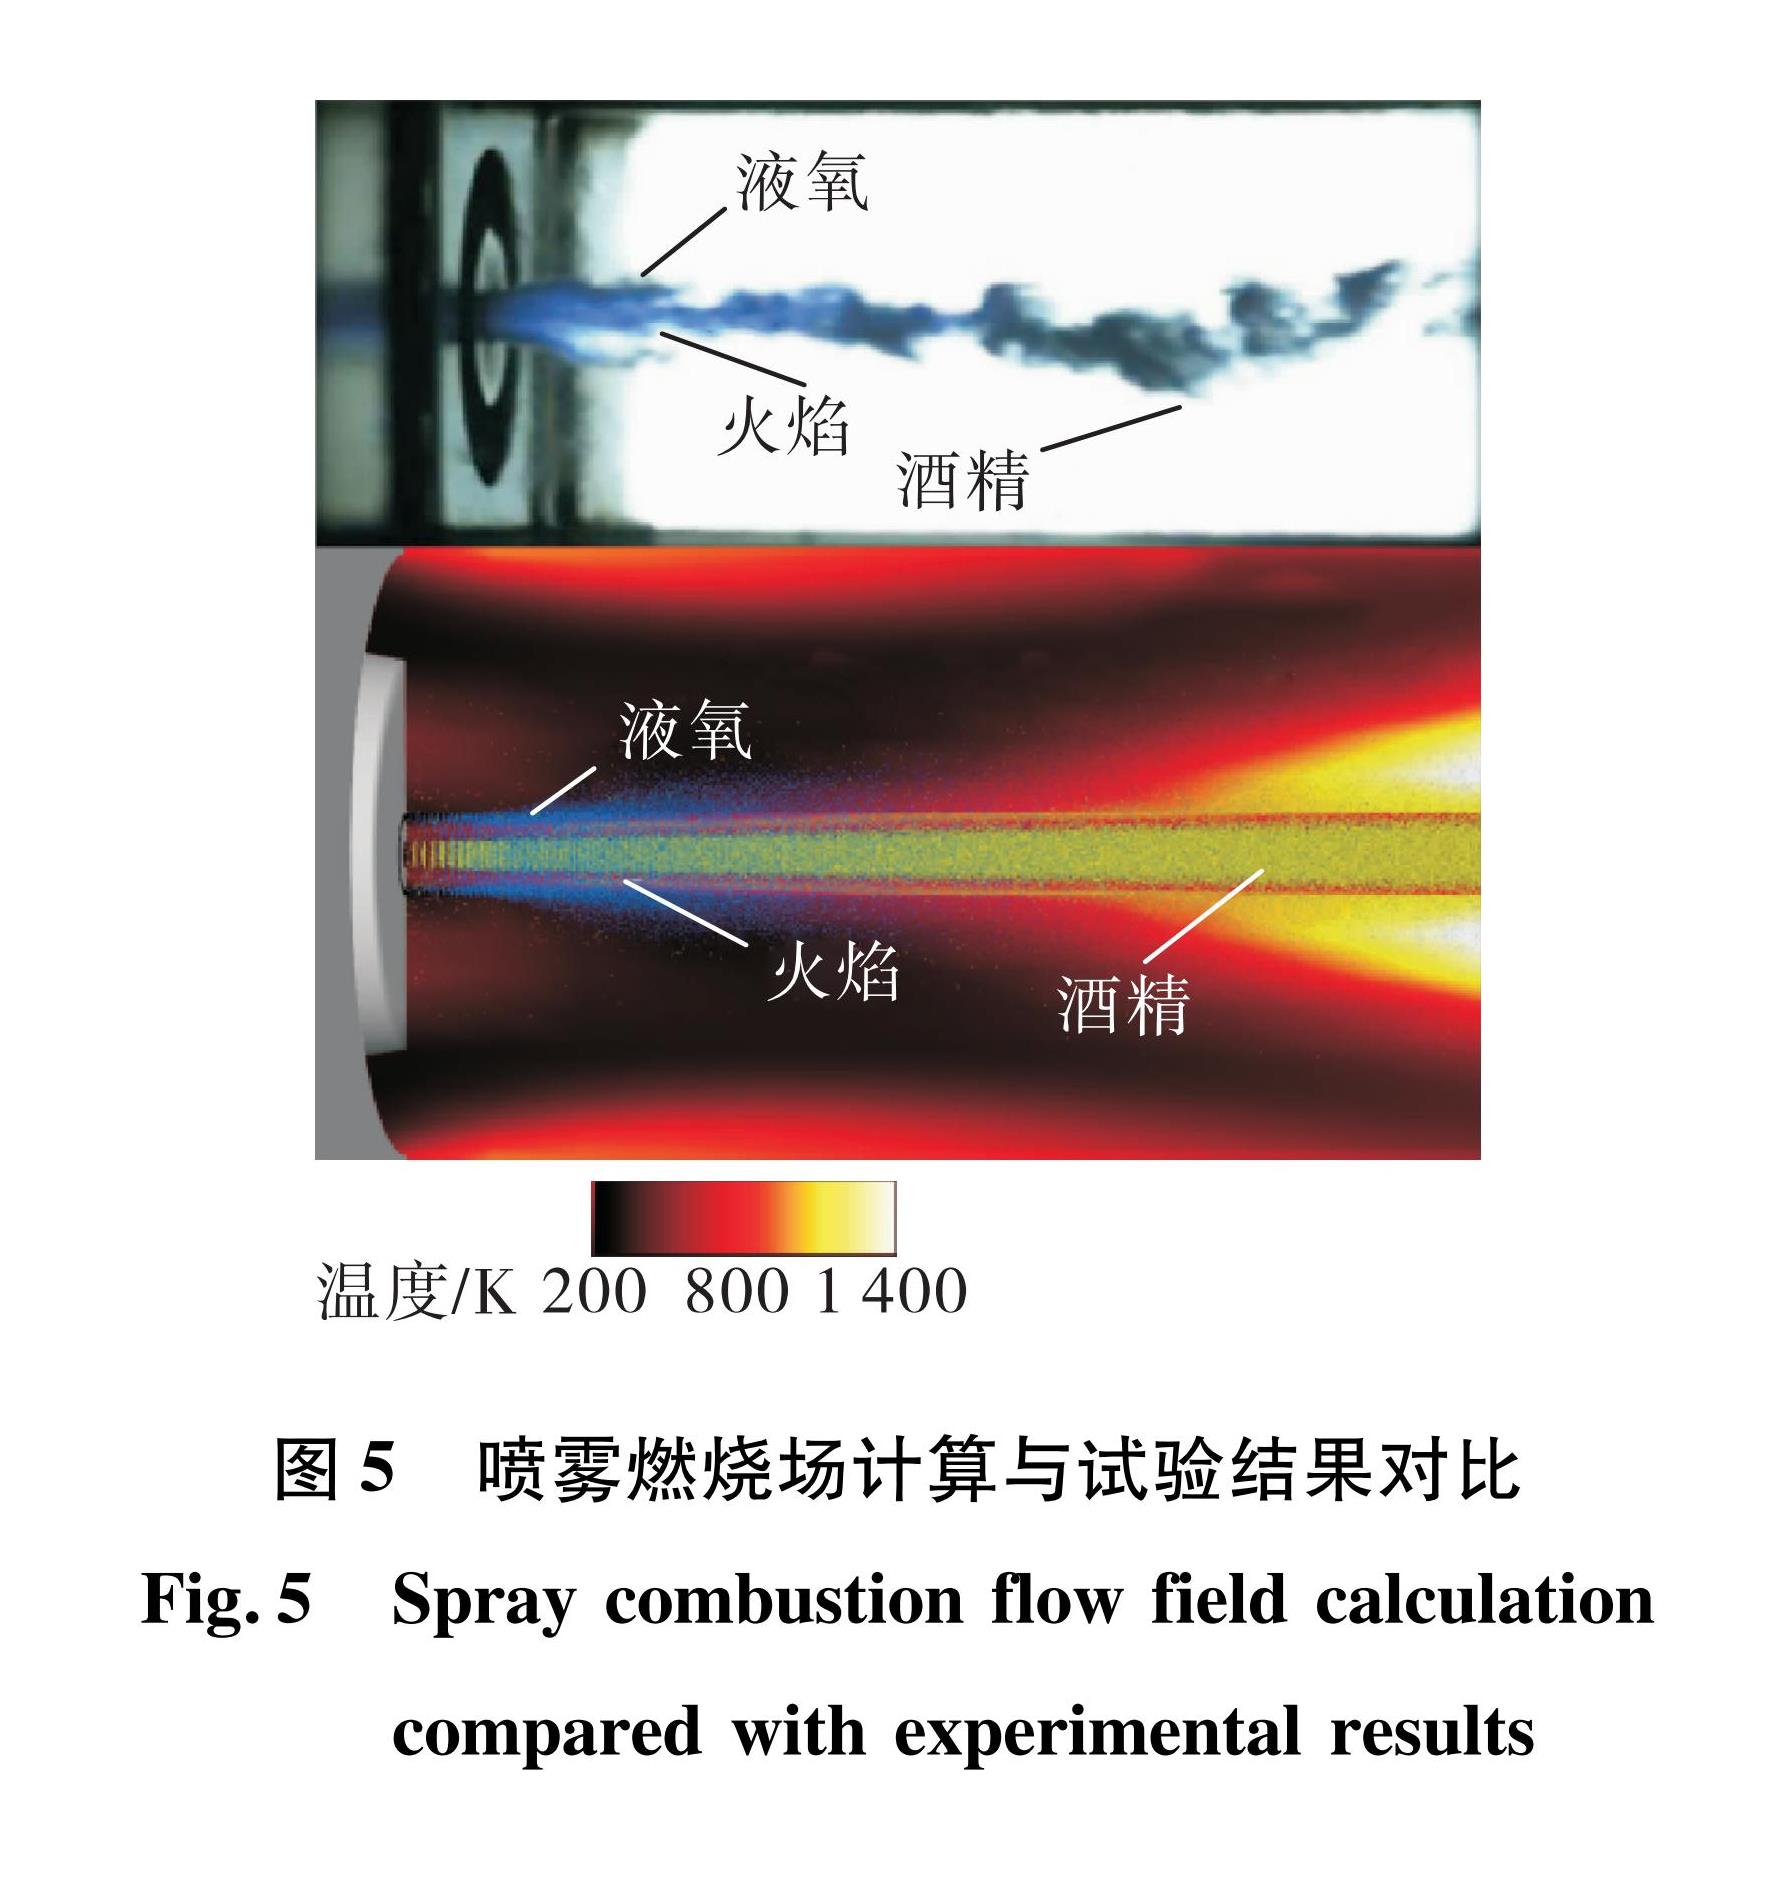 图5 喷雾燃烧场计算与试验结果对比<br/>Fig.5 Spray combustion flow field calculation compared with experimental results